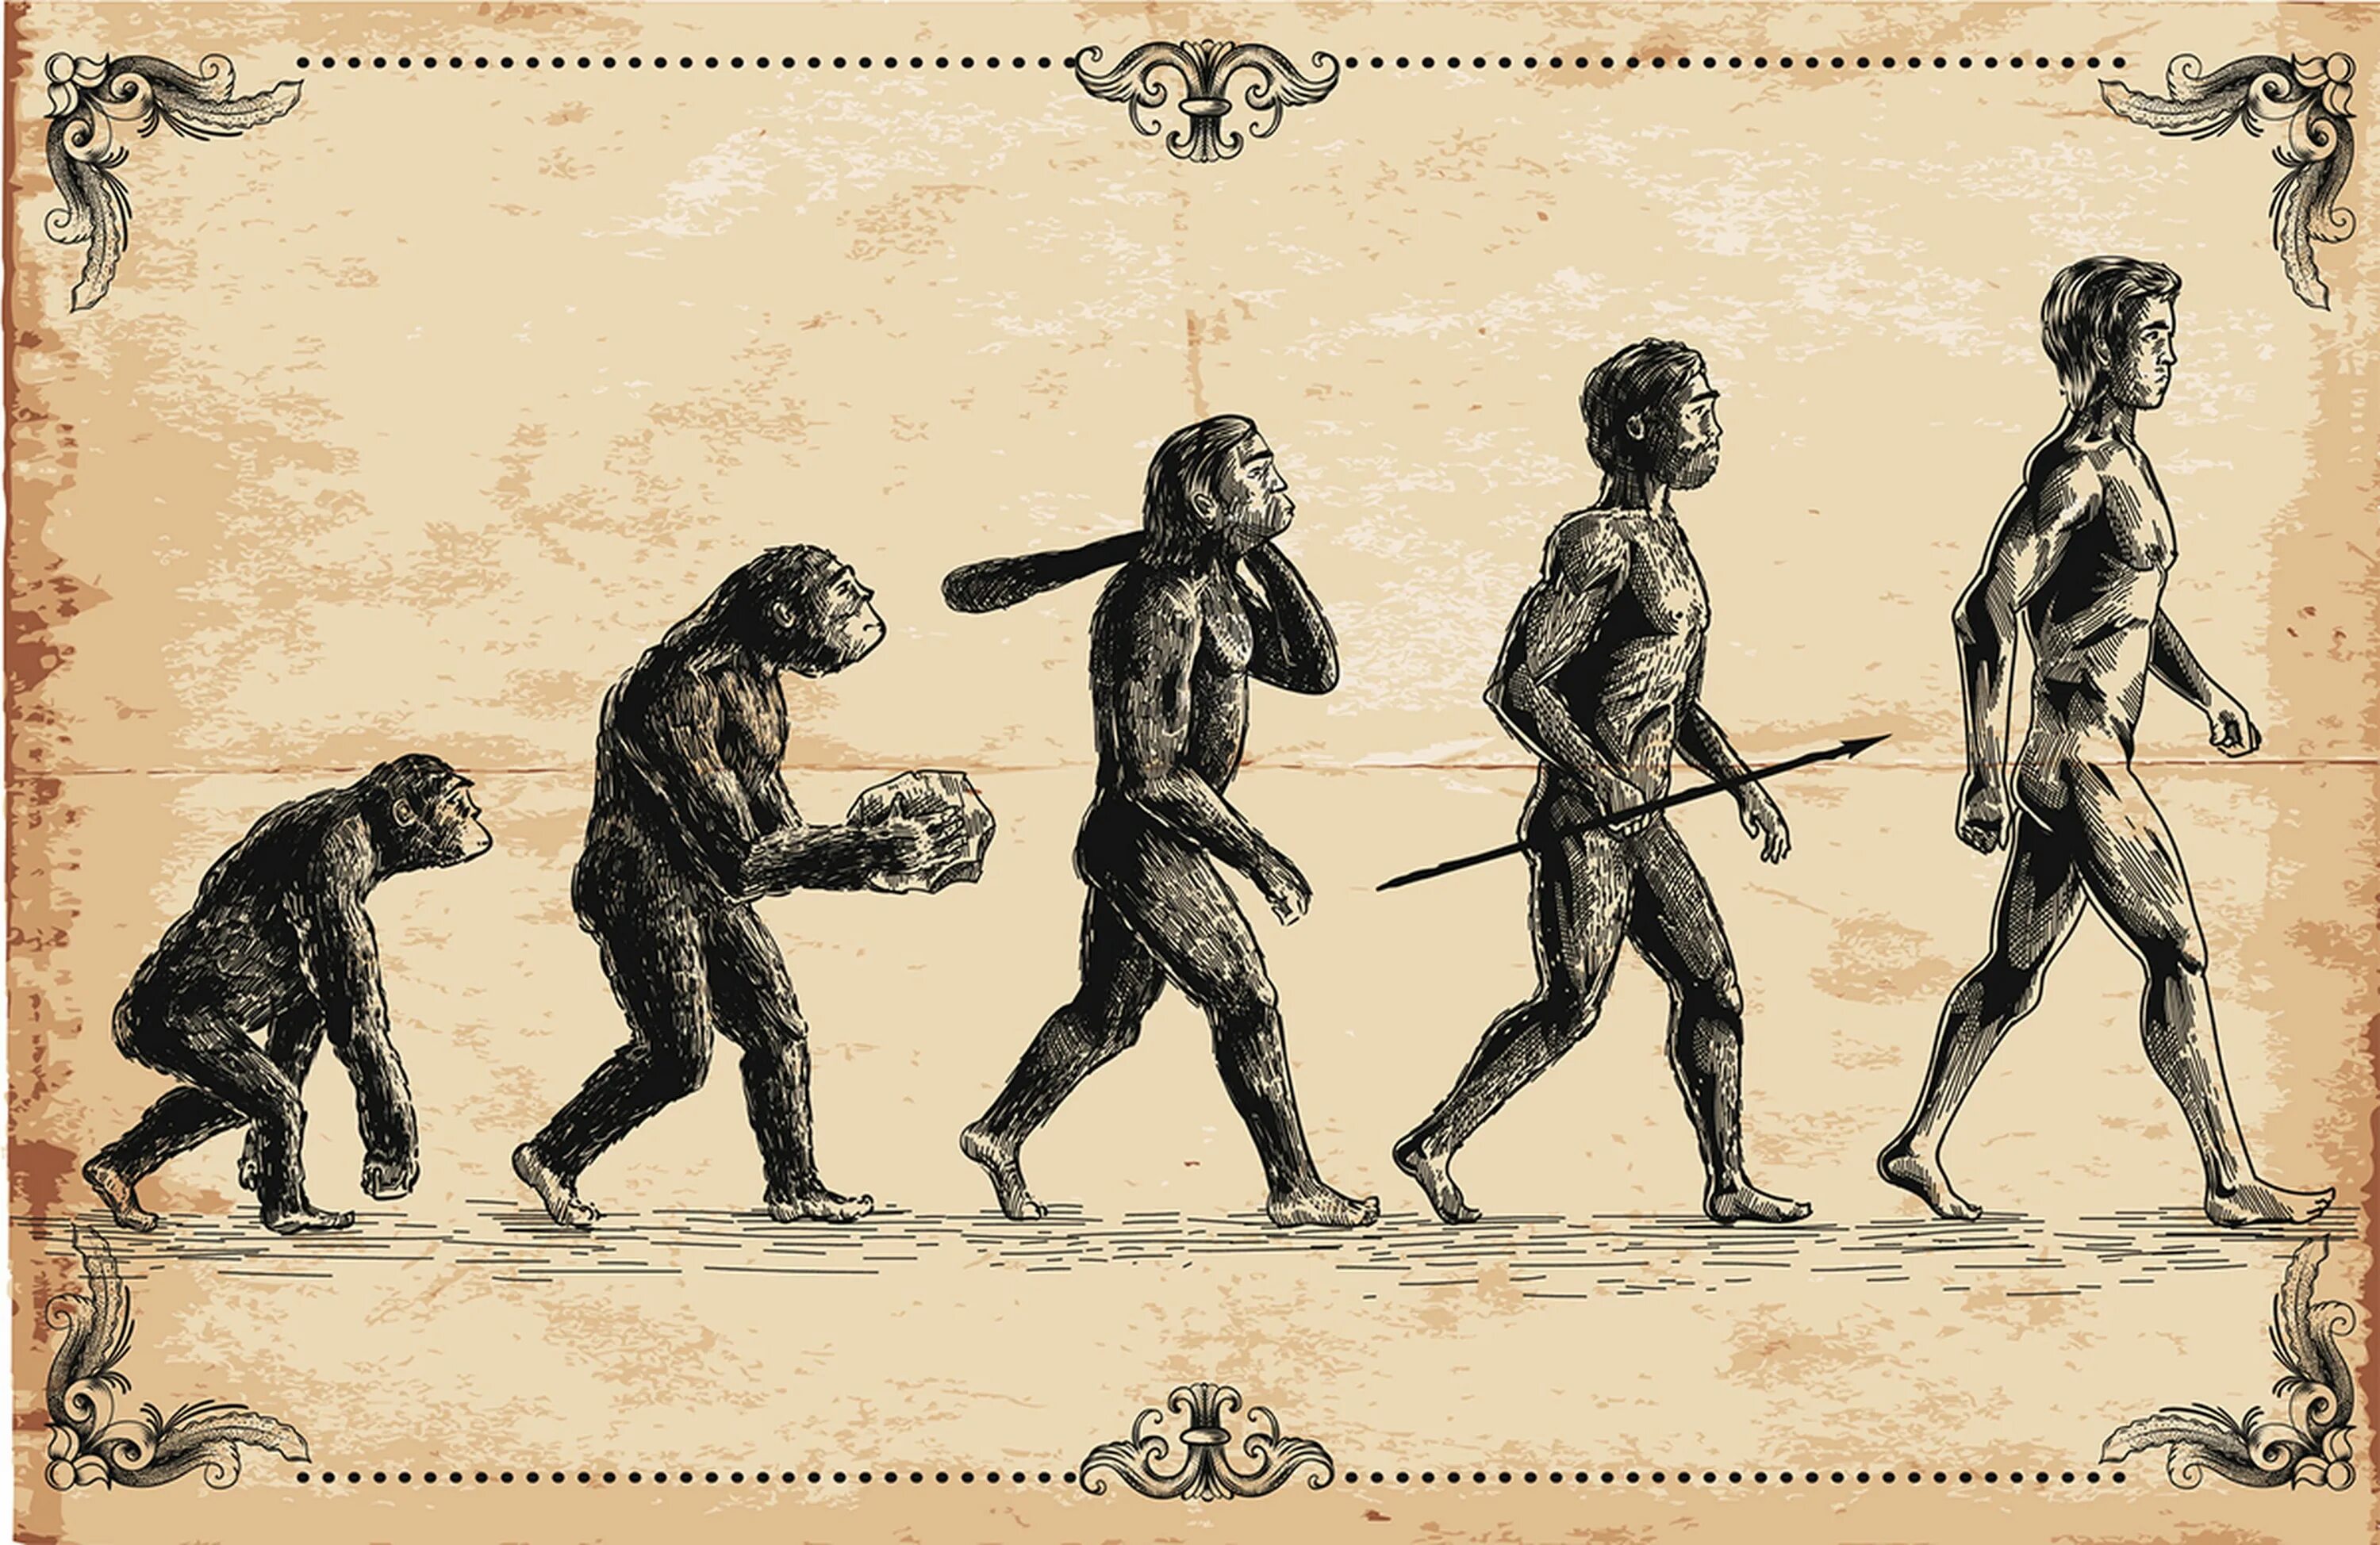 Процесс превращения человека в обезьяну. Эволюция человека homo sapiens. Теория Дарвина о эволюции человека.